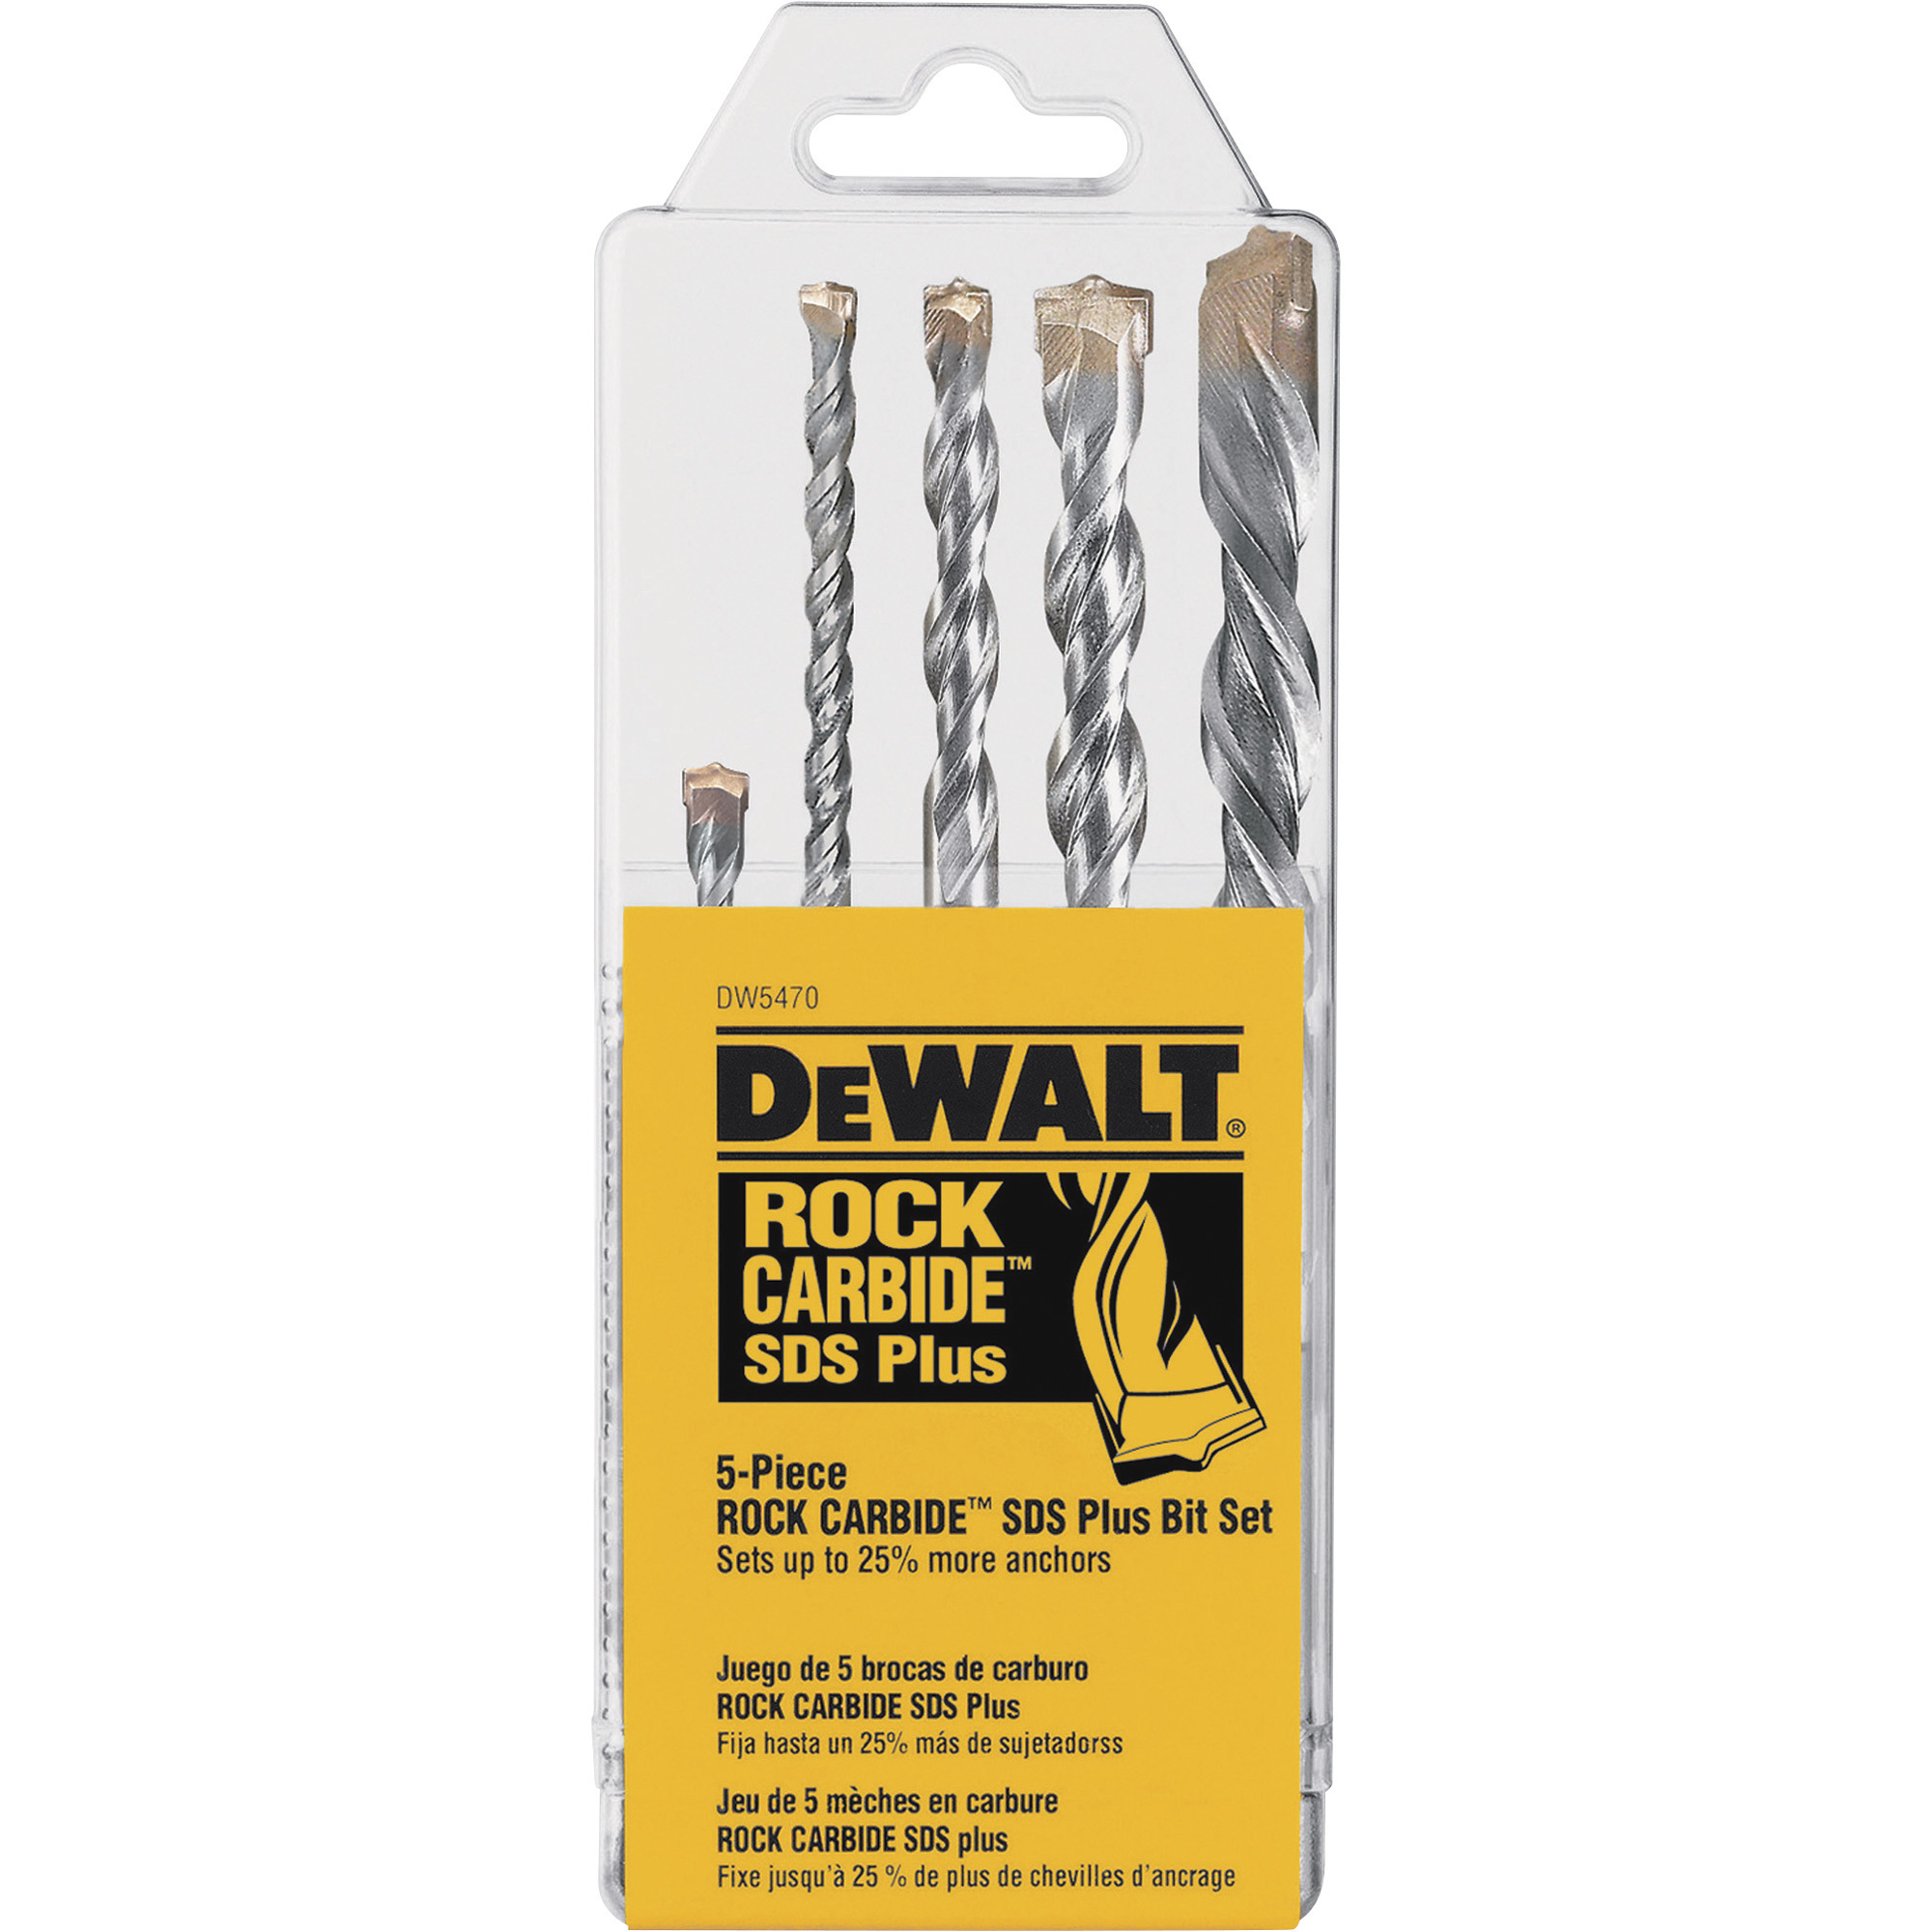 DEWALT Rock Carbide SDS Plus Bit Set, 5-Piece, DW5470